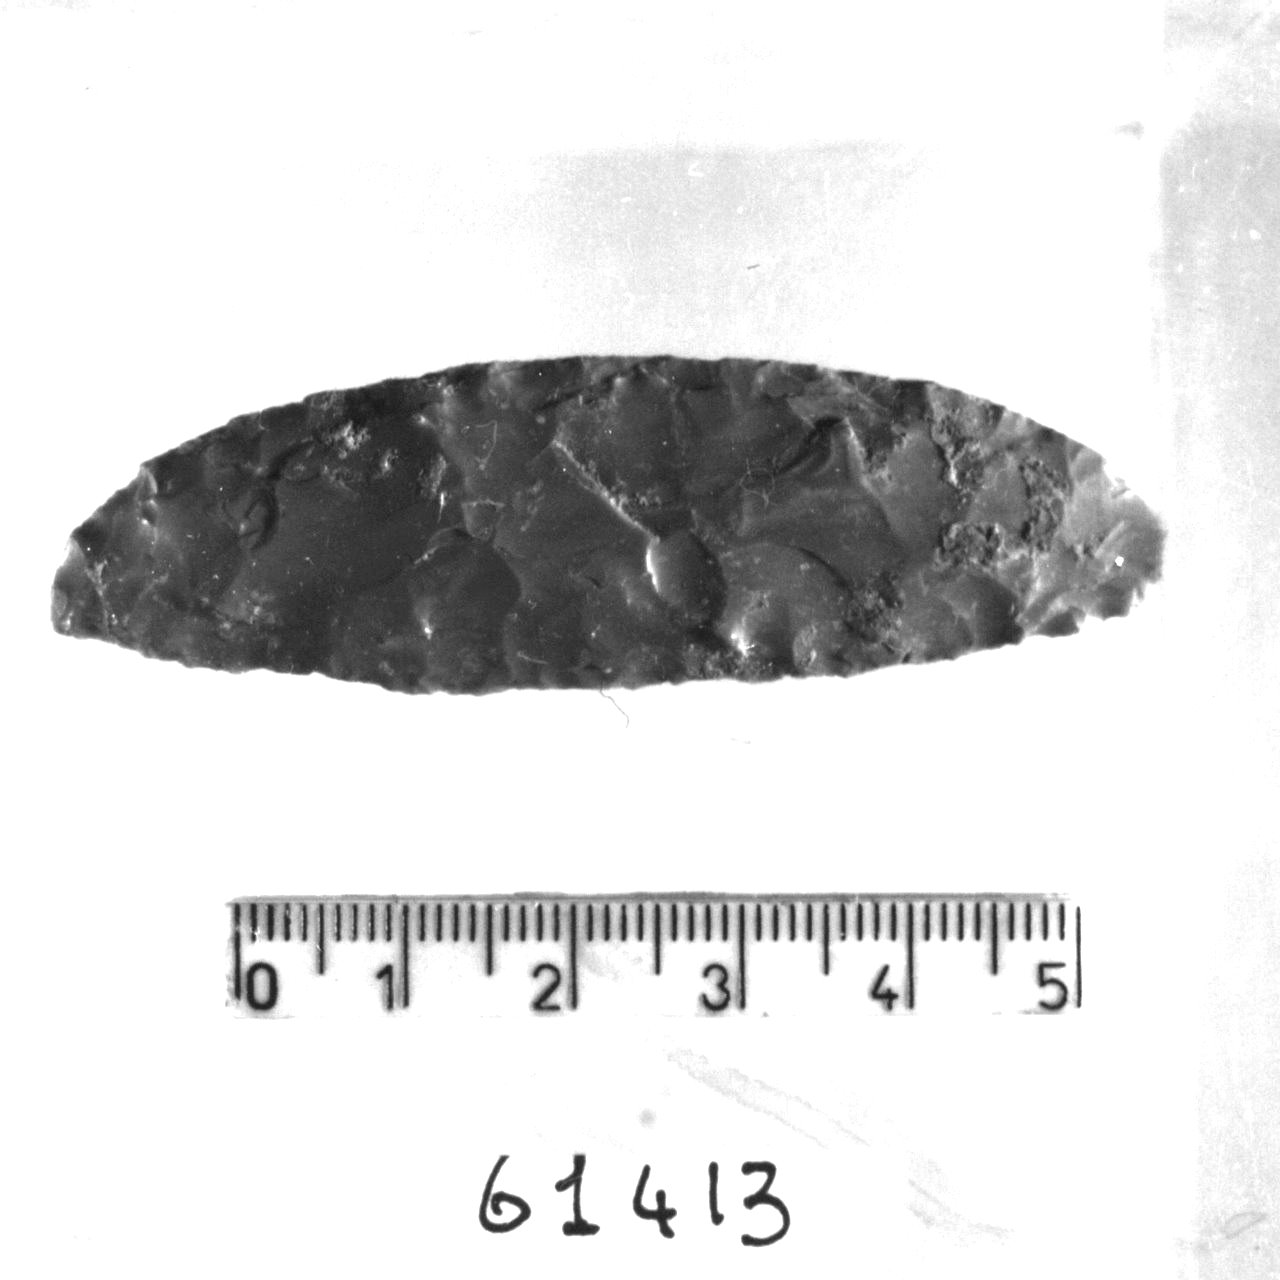 punta sessile (Eneolitico)